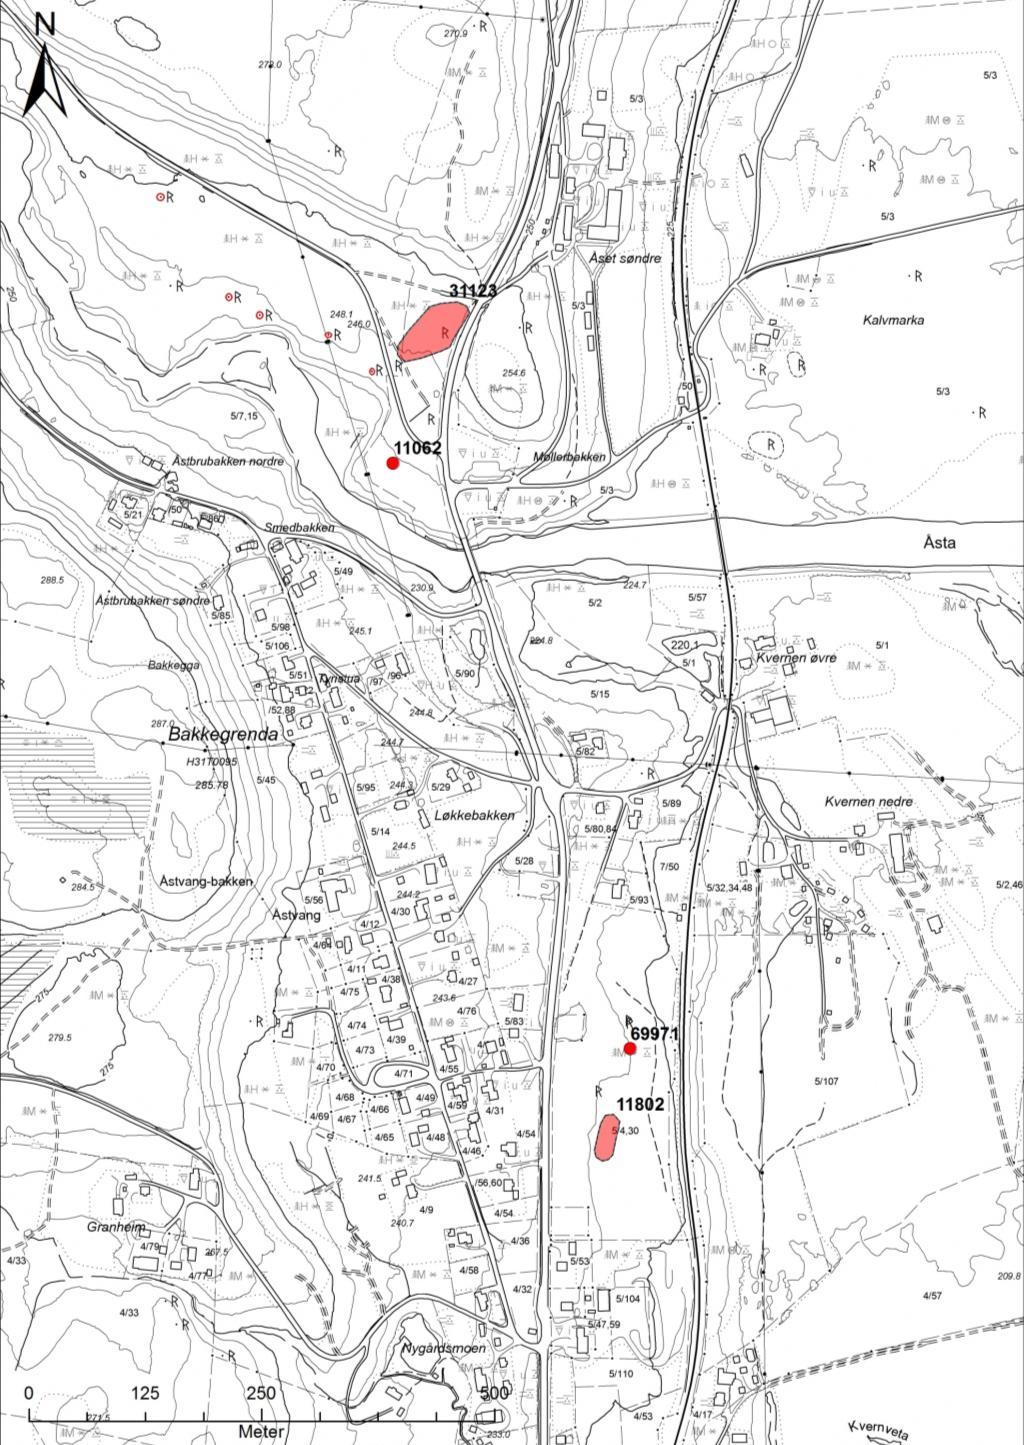 Det undersøkte fangstanlegget (id 31123) lå på gården Åset søndre 5/3, i et skogsområde nordvest for dagens riksvei 3.